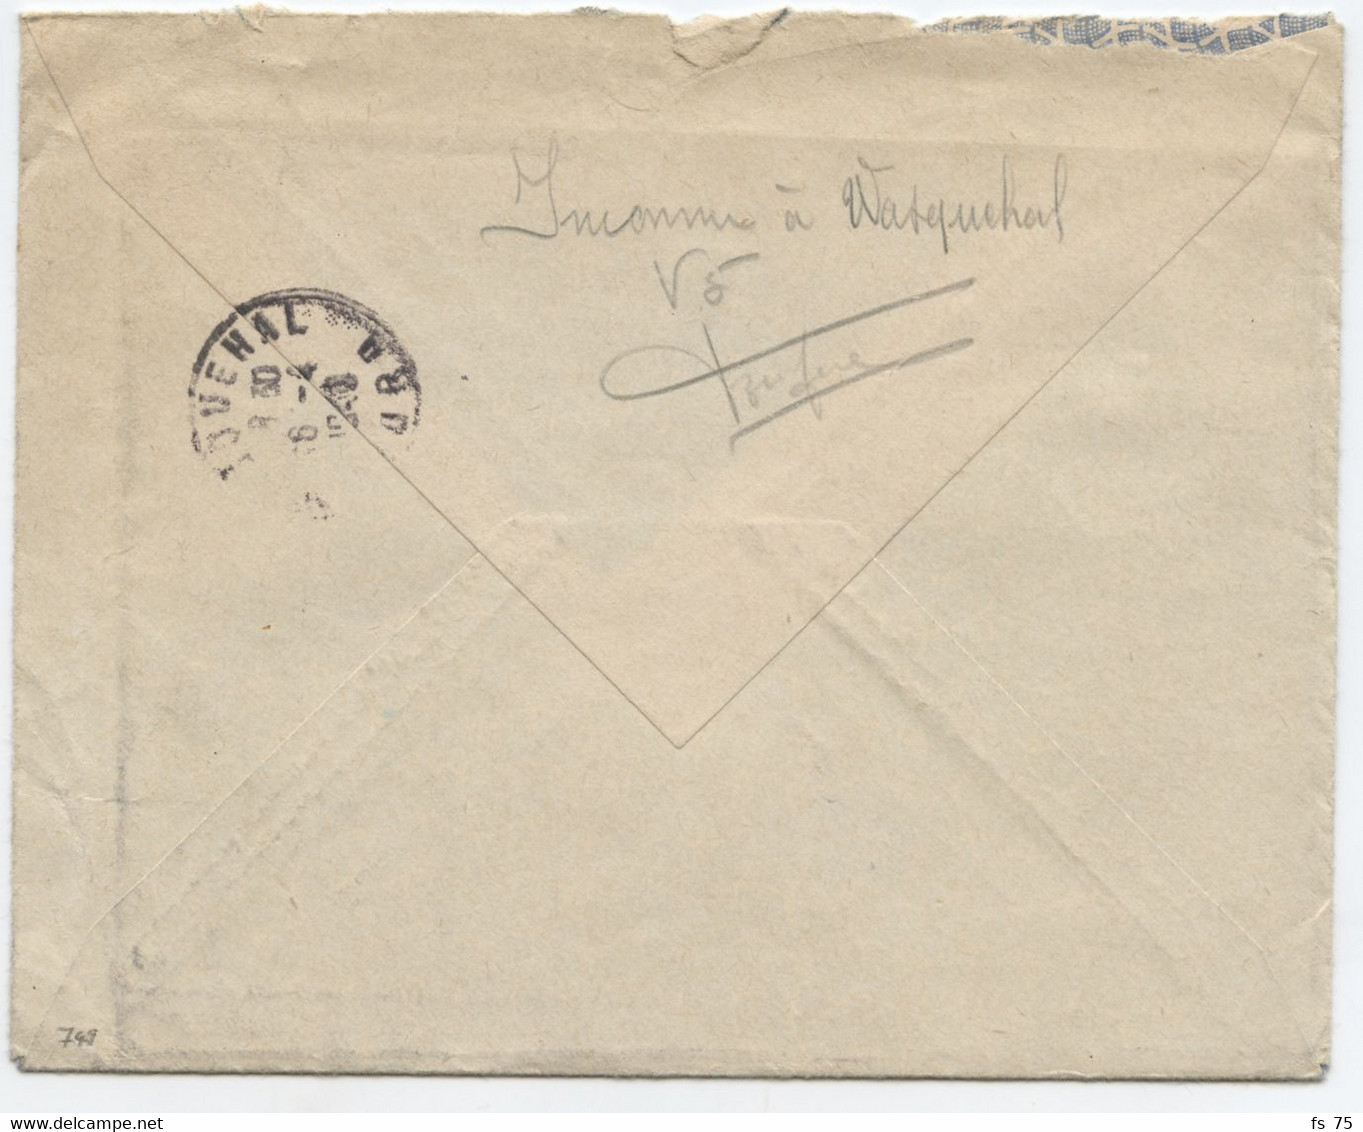 BELGIQUE - COB 749 1F35 CARMIN ADRIEN GERLACHE 5C RELAIS POTTES SUR LETTRE FRONTALIERE POUR CROIX, 1948 - Briefe U. Dokumente